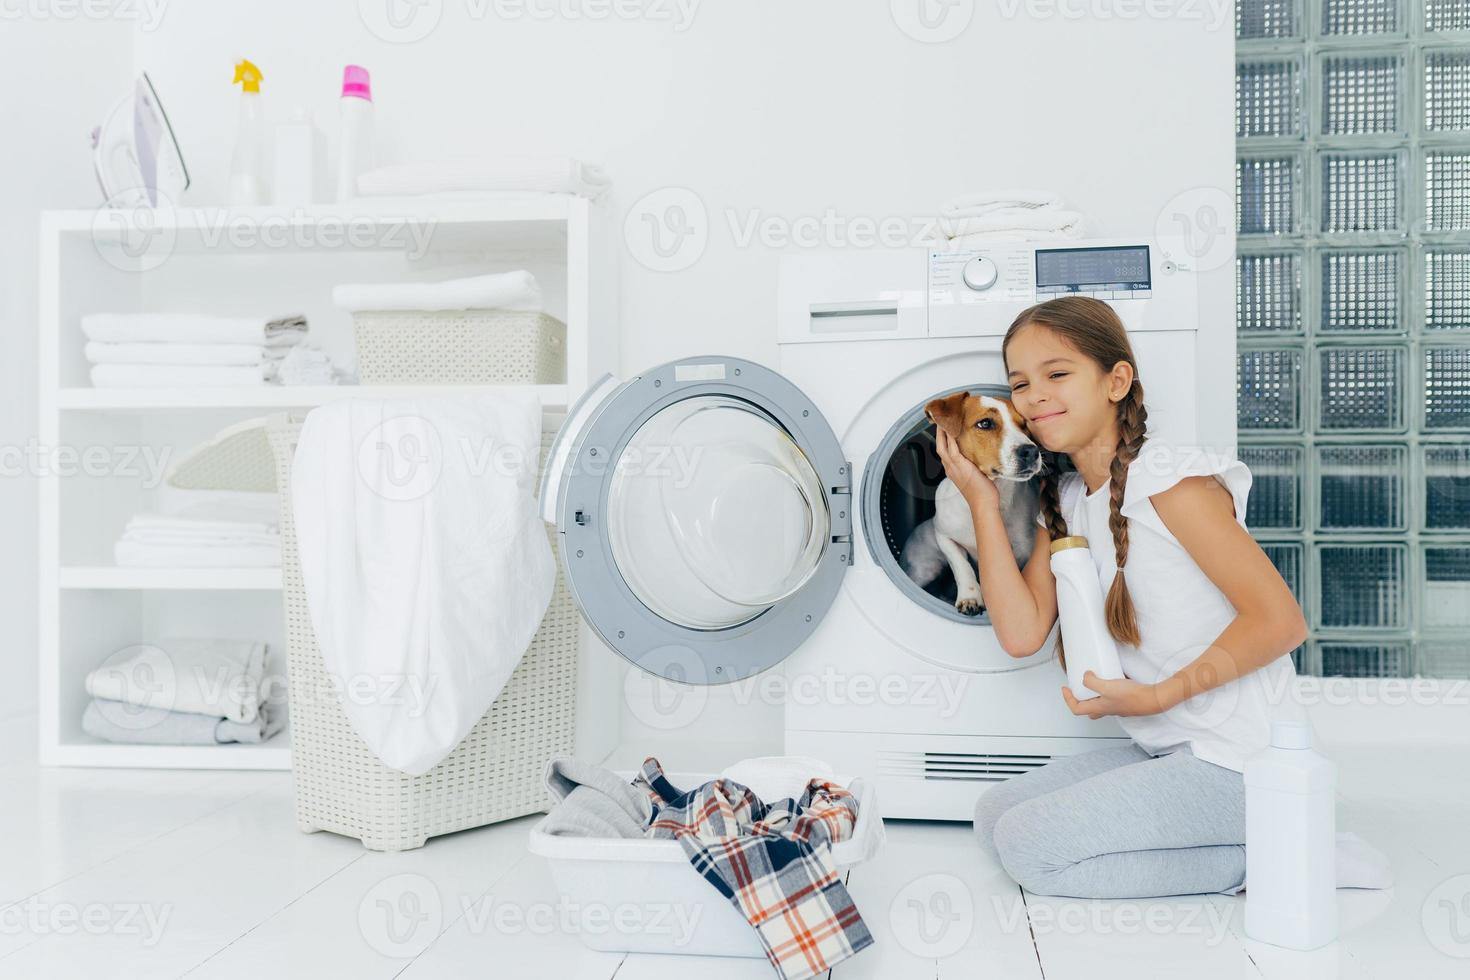 foto van aantrekkelijk meisje dat rashond aait in wasmachine, wasmiddel vasthoudt, wasmachine gaat laden, bezig met was en huishoudelijke taken, wast kleren thuis, poseert binnenshuis.